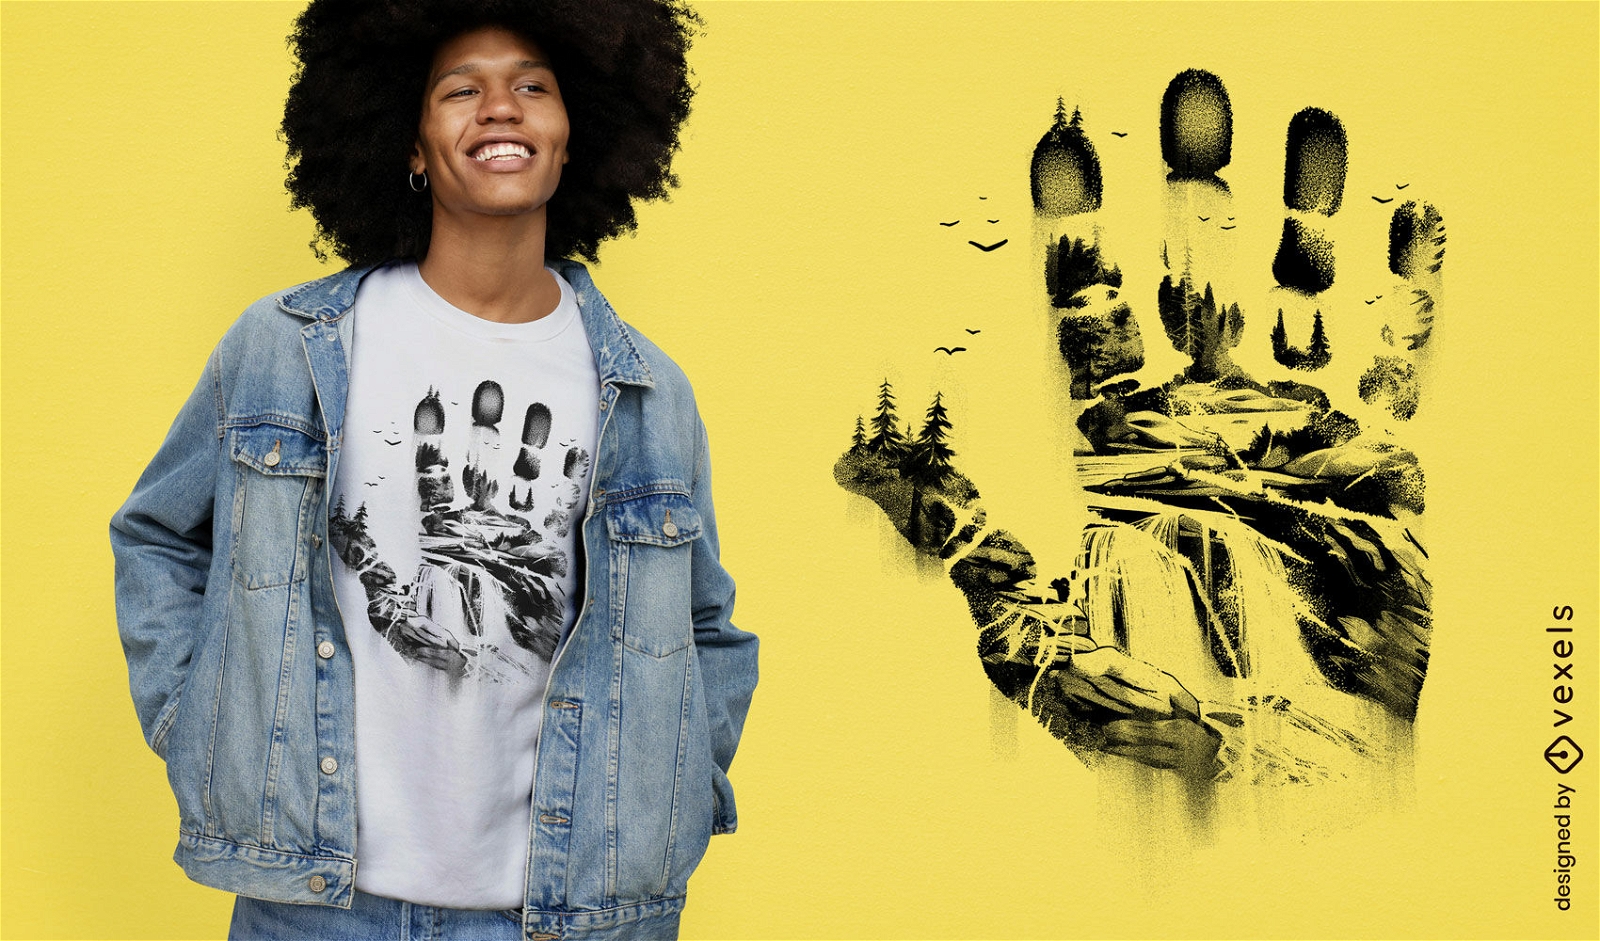 Handprint forest t-shirt design